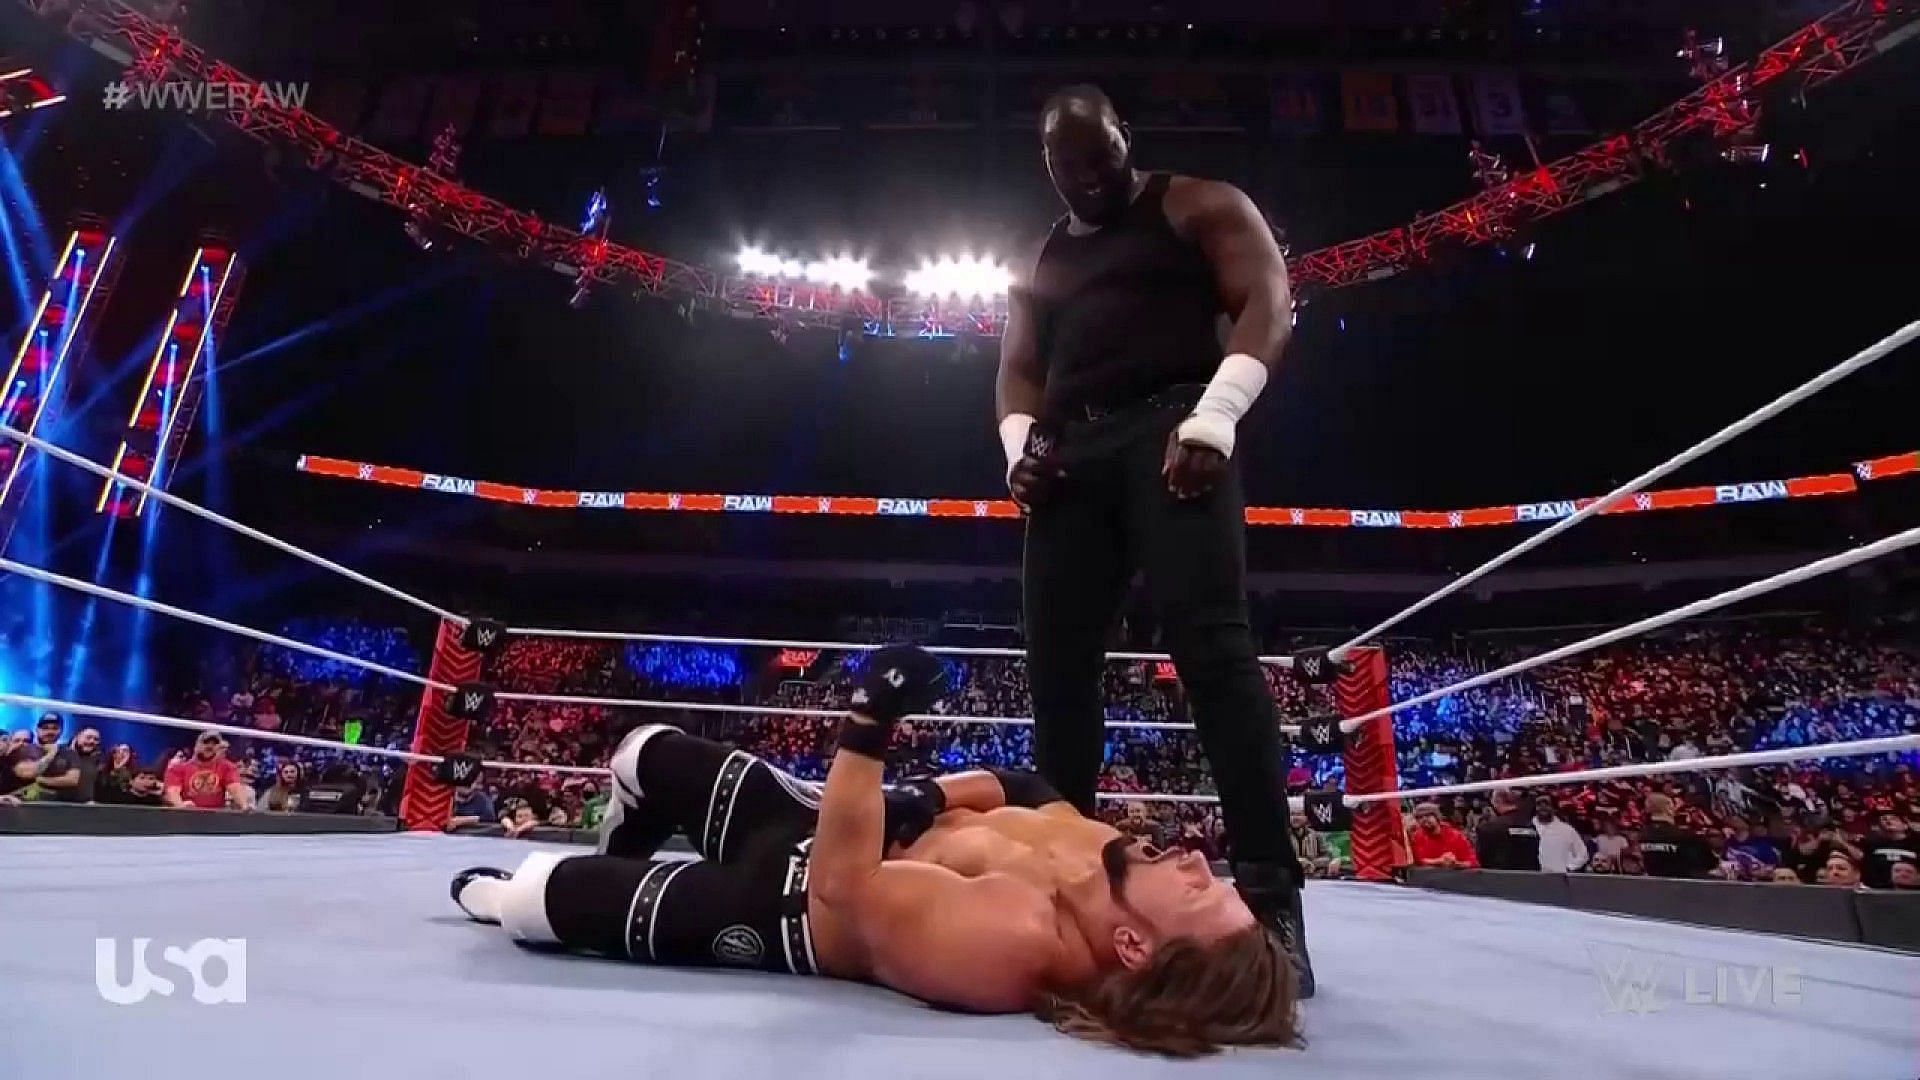 WWE रॉ (Raw) में फैंस को मिला बड़ा सरप्राइज